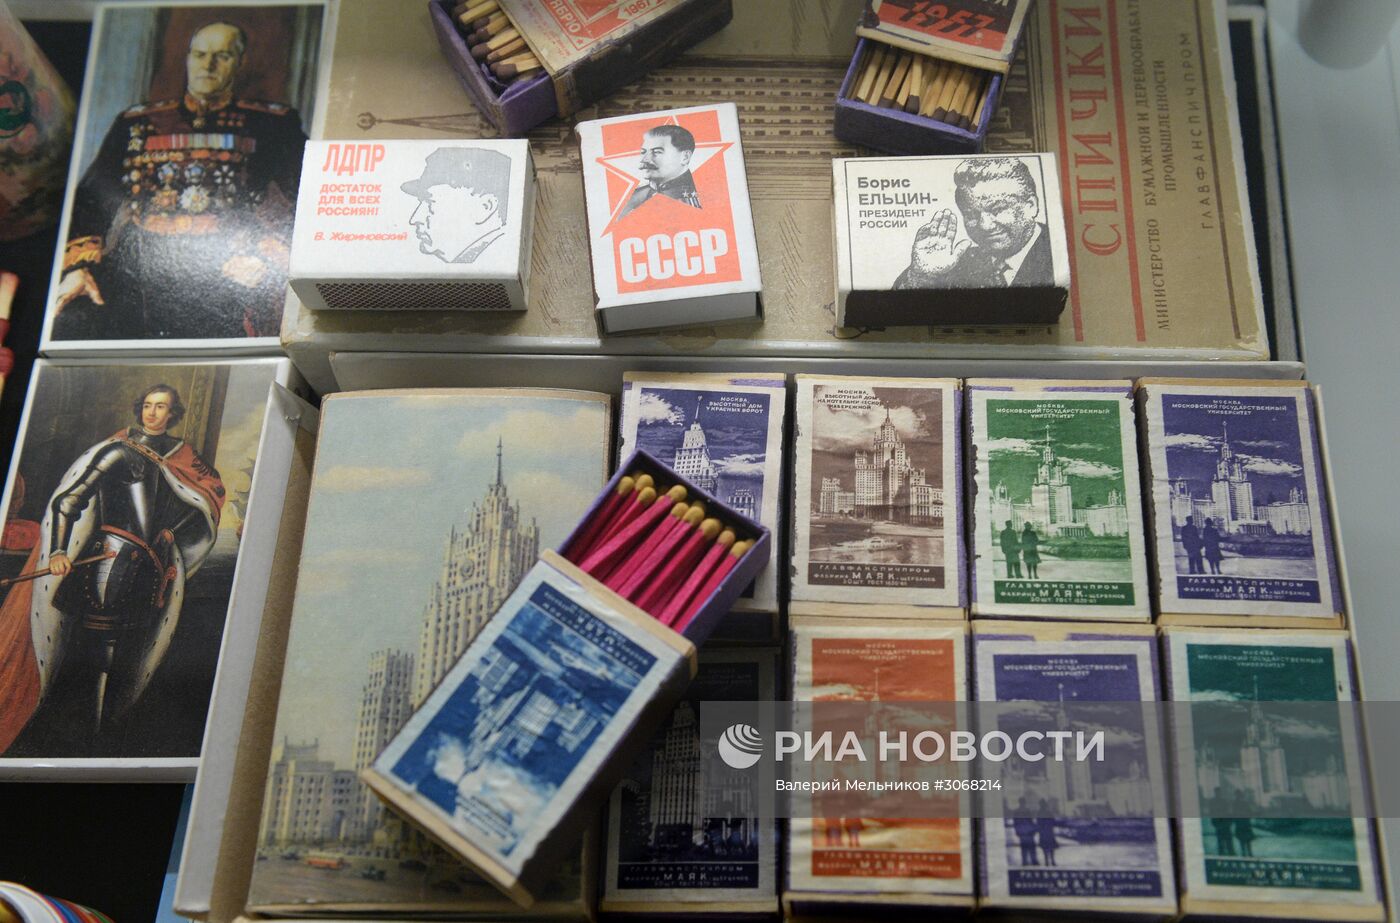 Открытие выставки "Советская эпоха, отражённая в филумении и филателии"